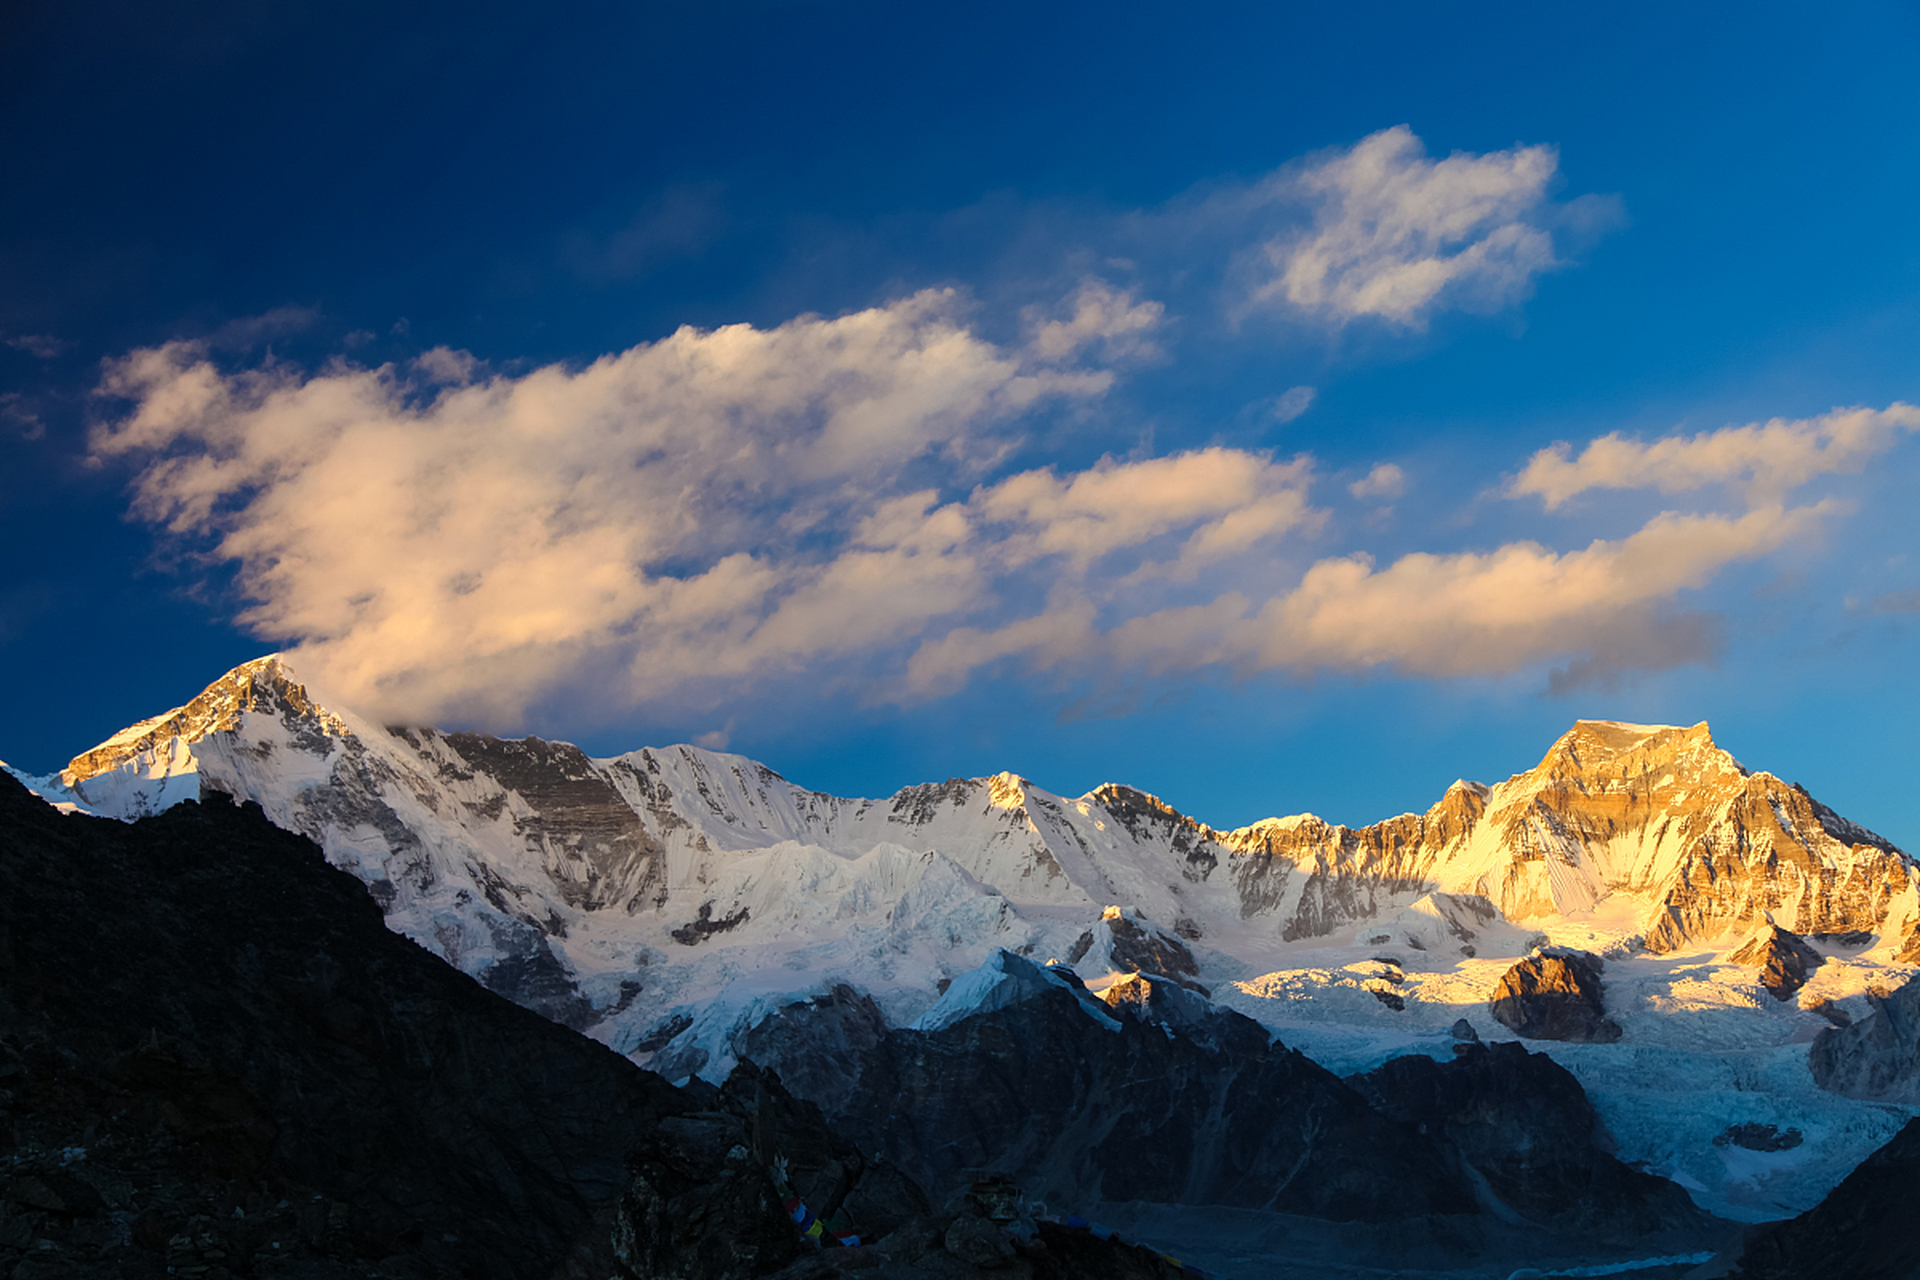 亚拉雪山位于四川甘孜州康定,道孚和丹巴三县交界处,是川藏茶马古道